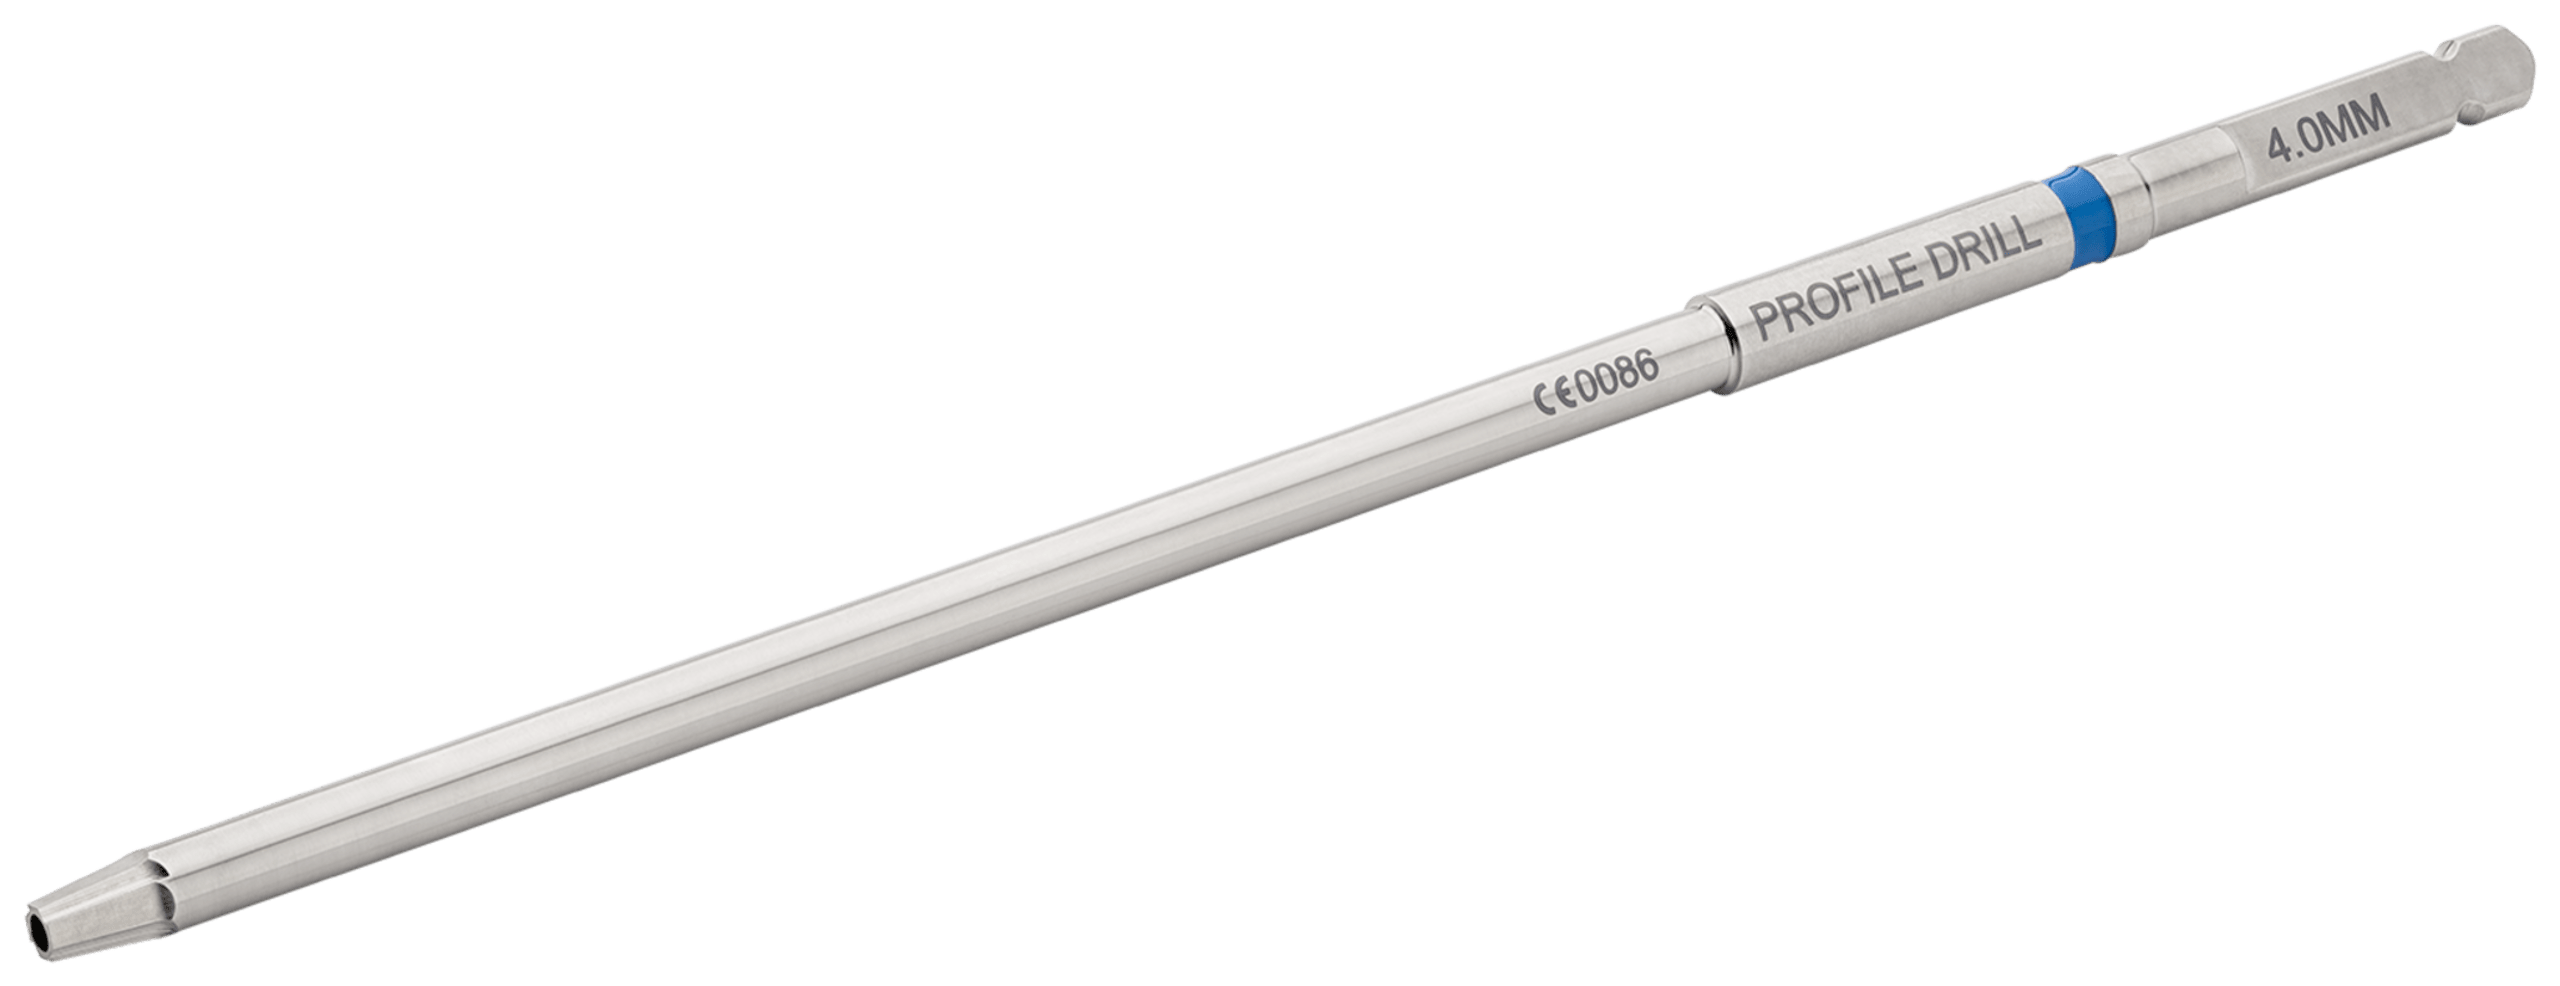 Profilbohrer, für 4 mm minimal-invasive FT-Schraube